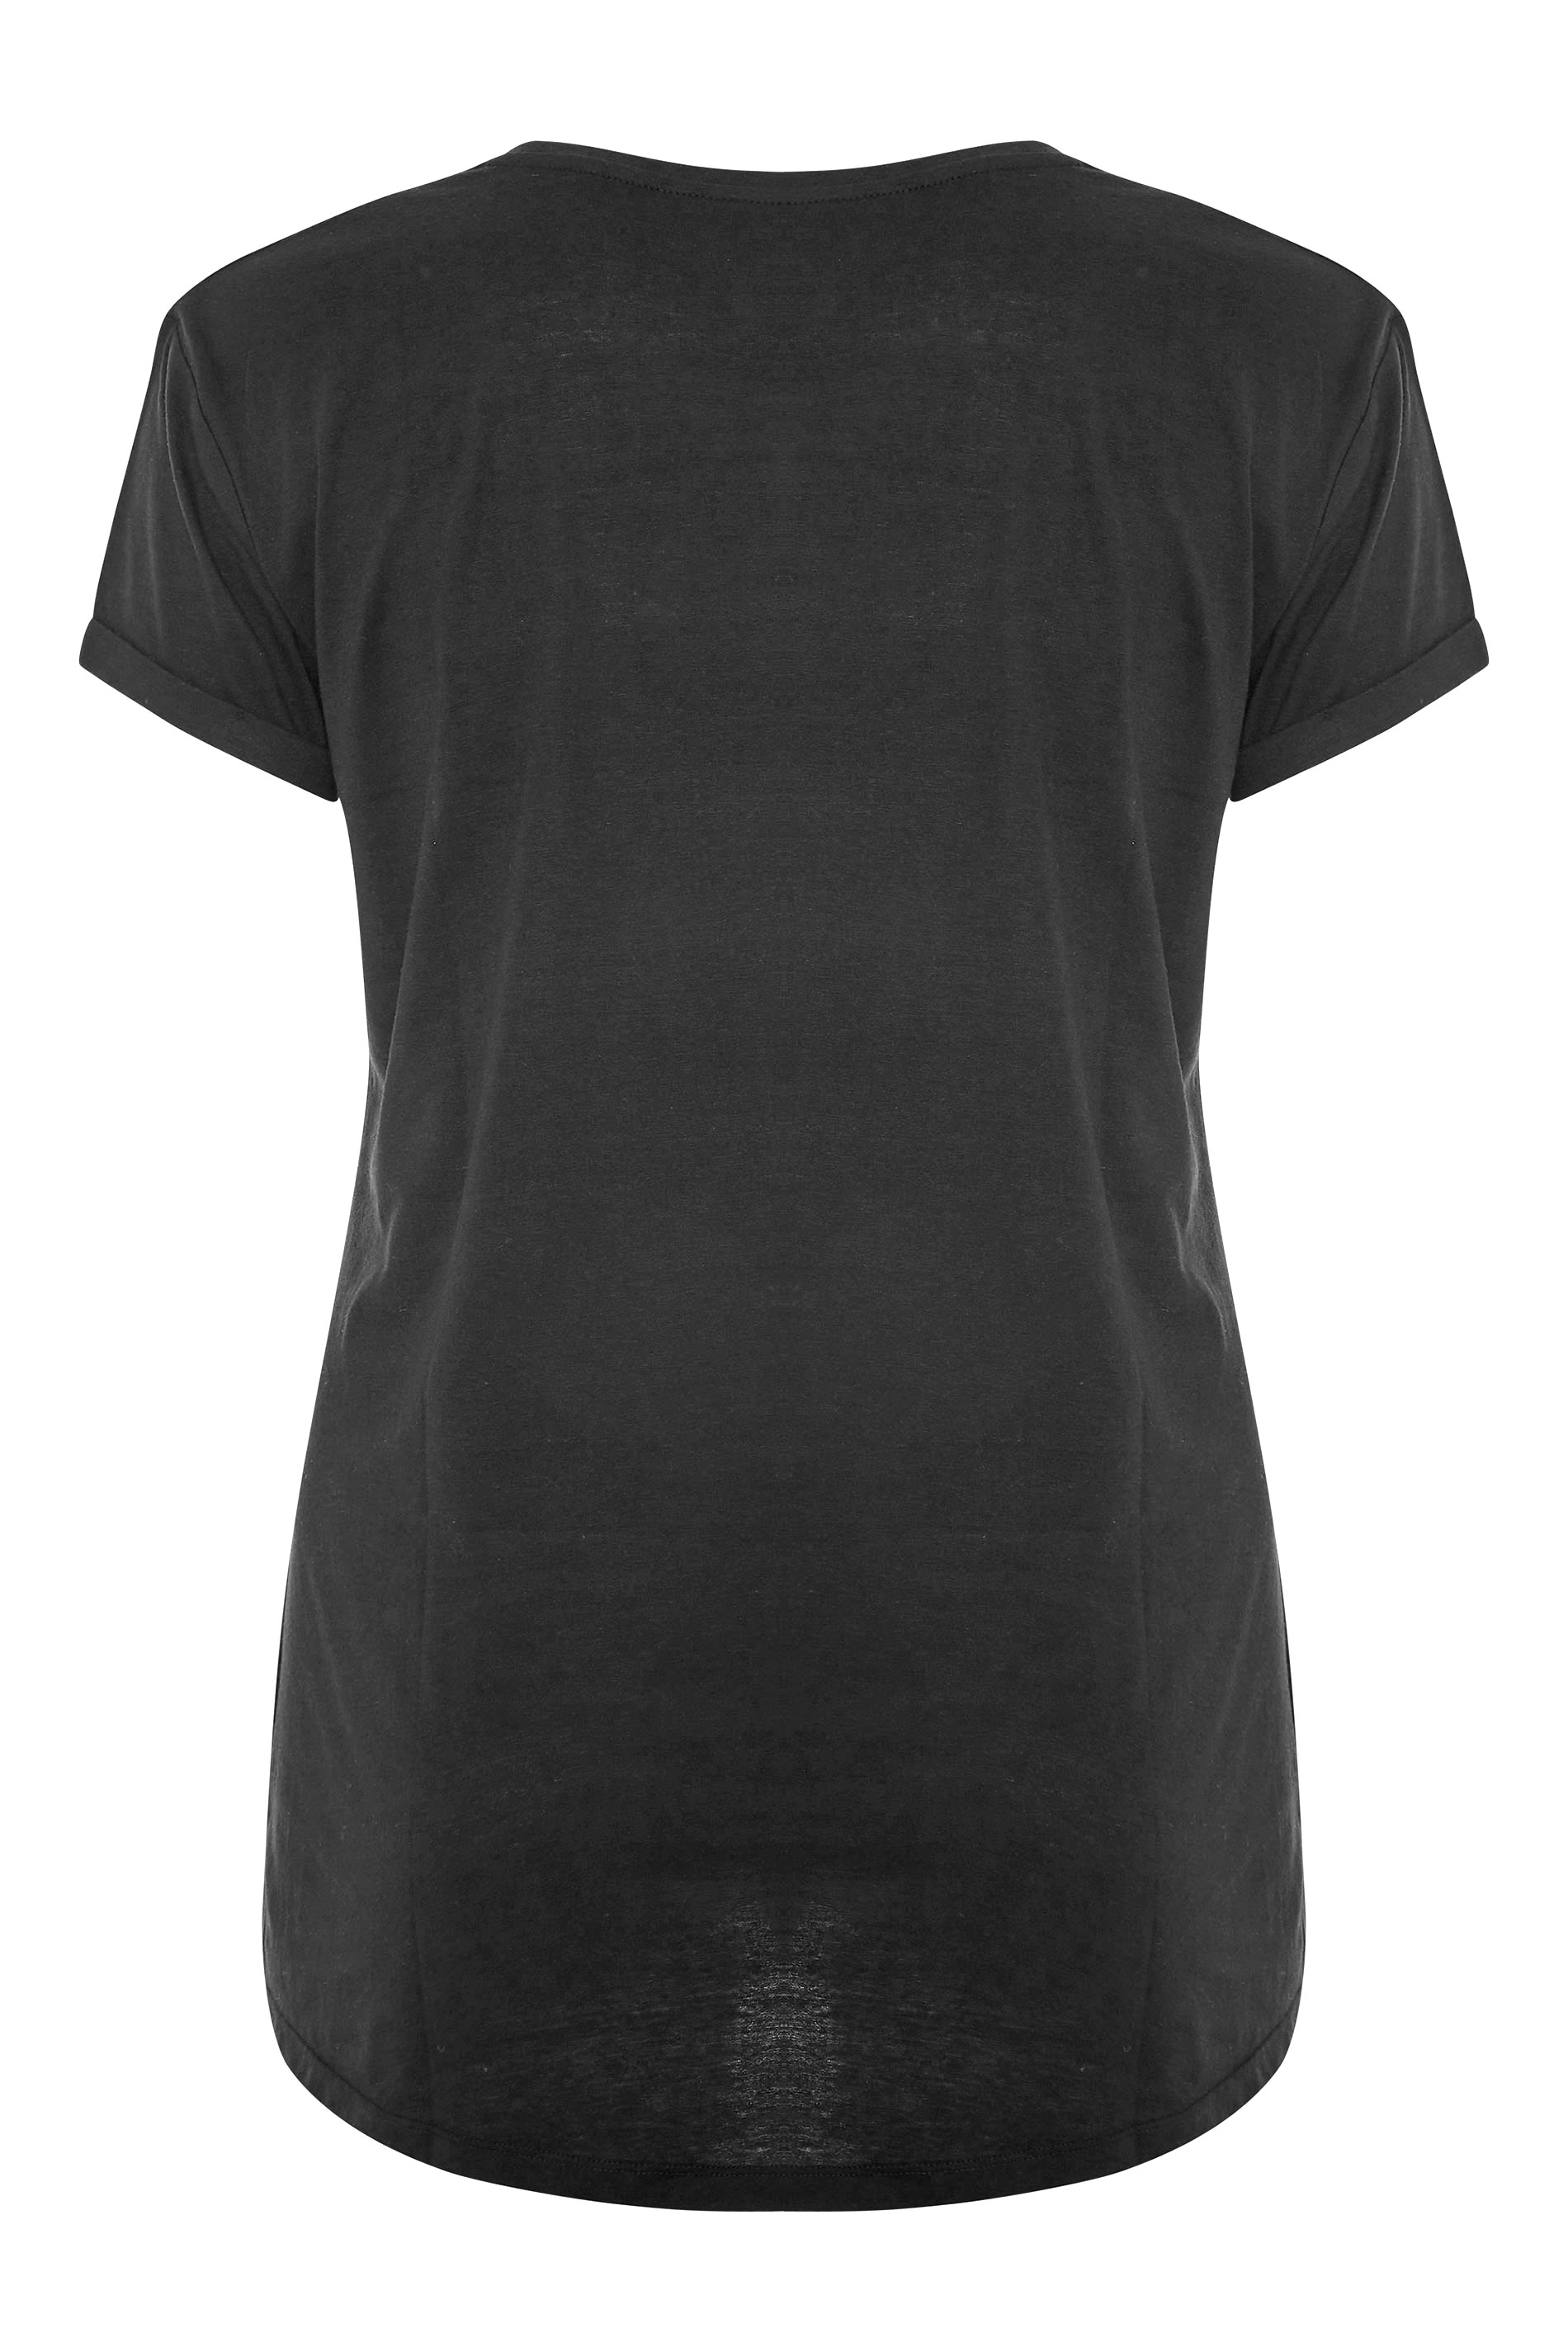 Grande taille  Tops Grande taille  T-Shirts | T-Shirt Noir Imprimé Aigle 'Rock Tour' - SV53181